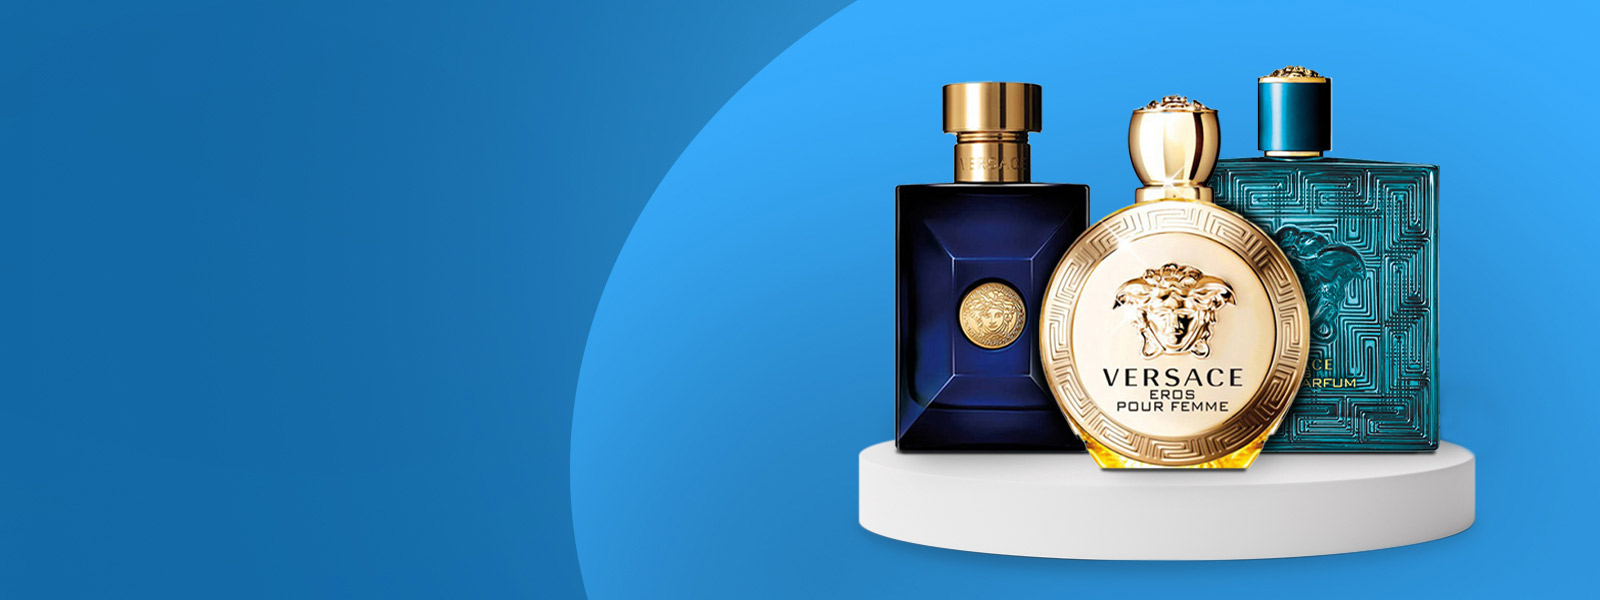 Branded Perfumes Sri Lanka | Perfume Price Sri Lanka - Aroma Perfume